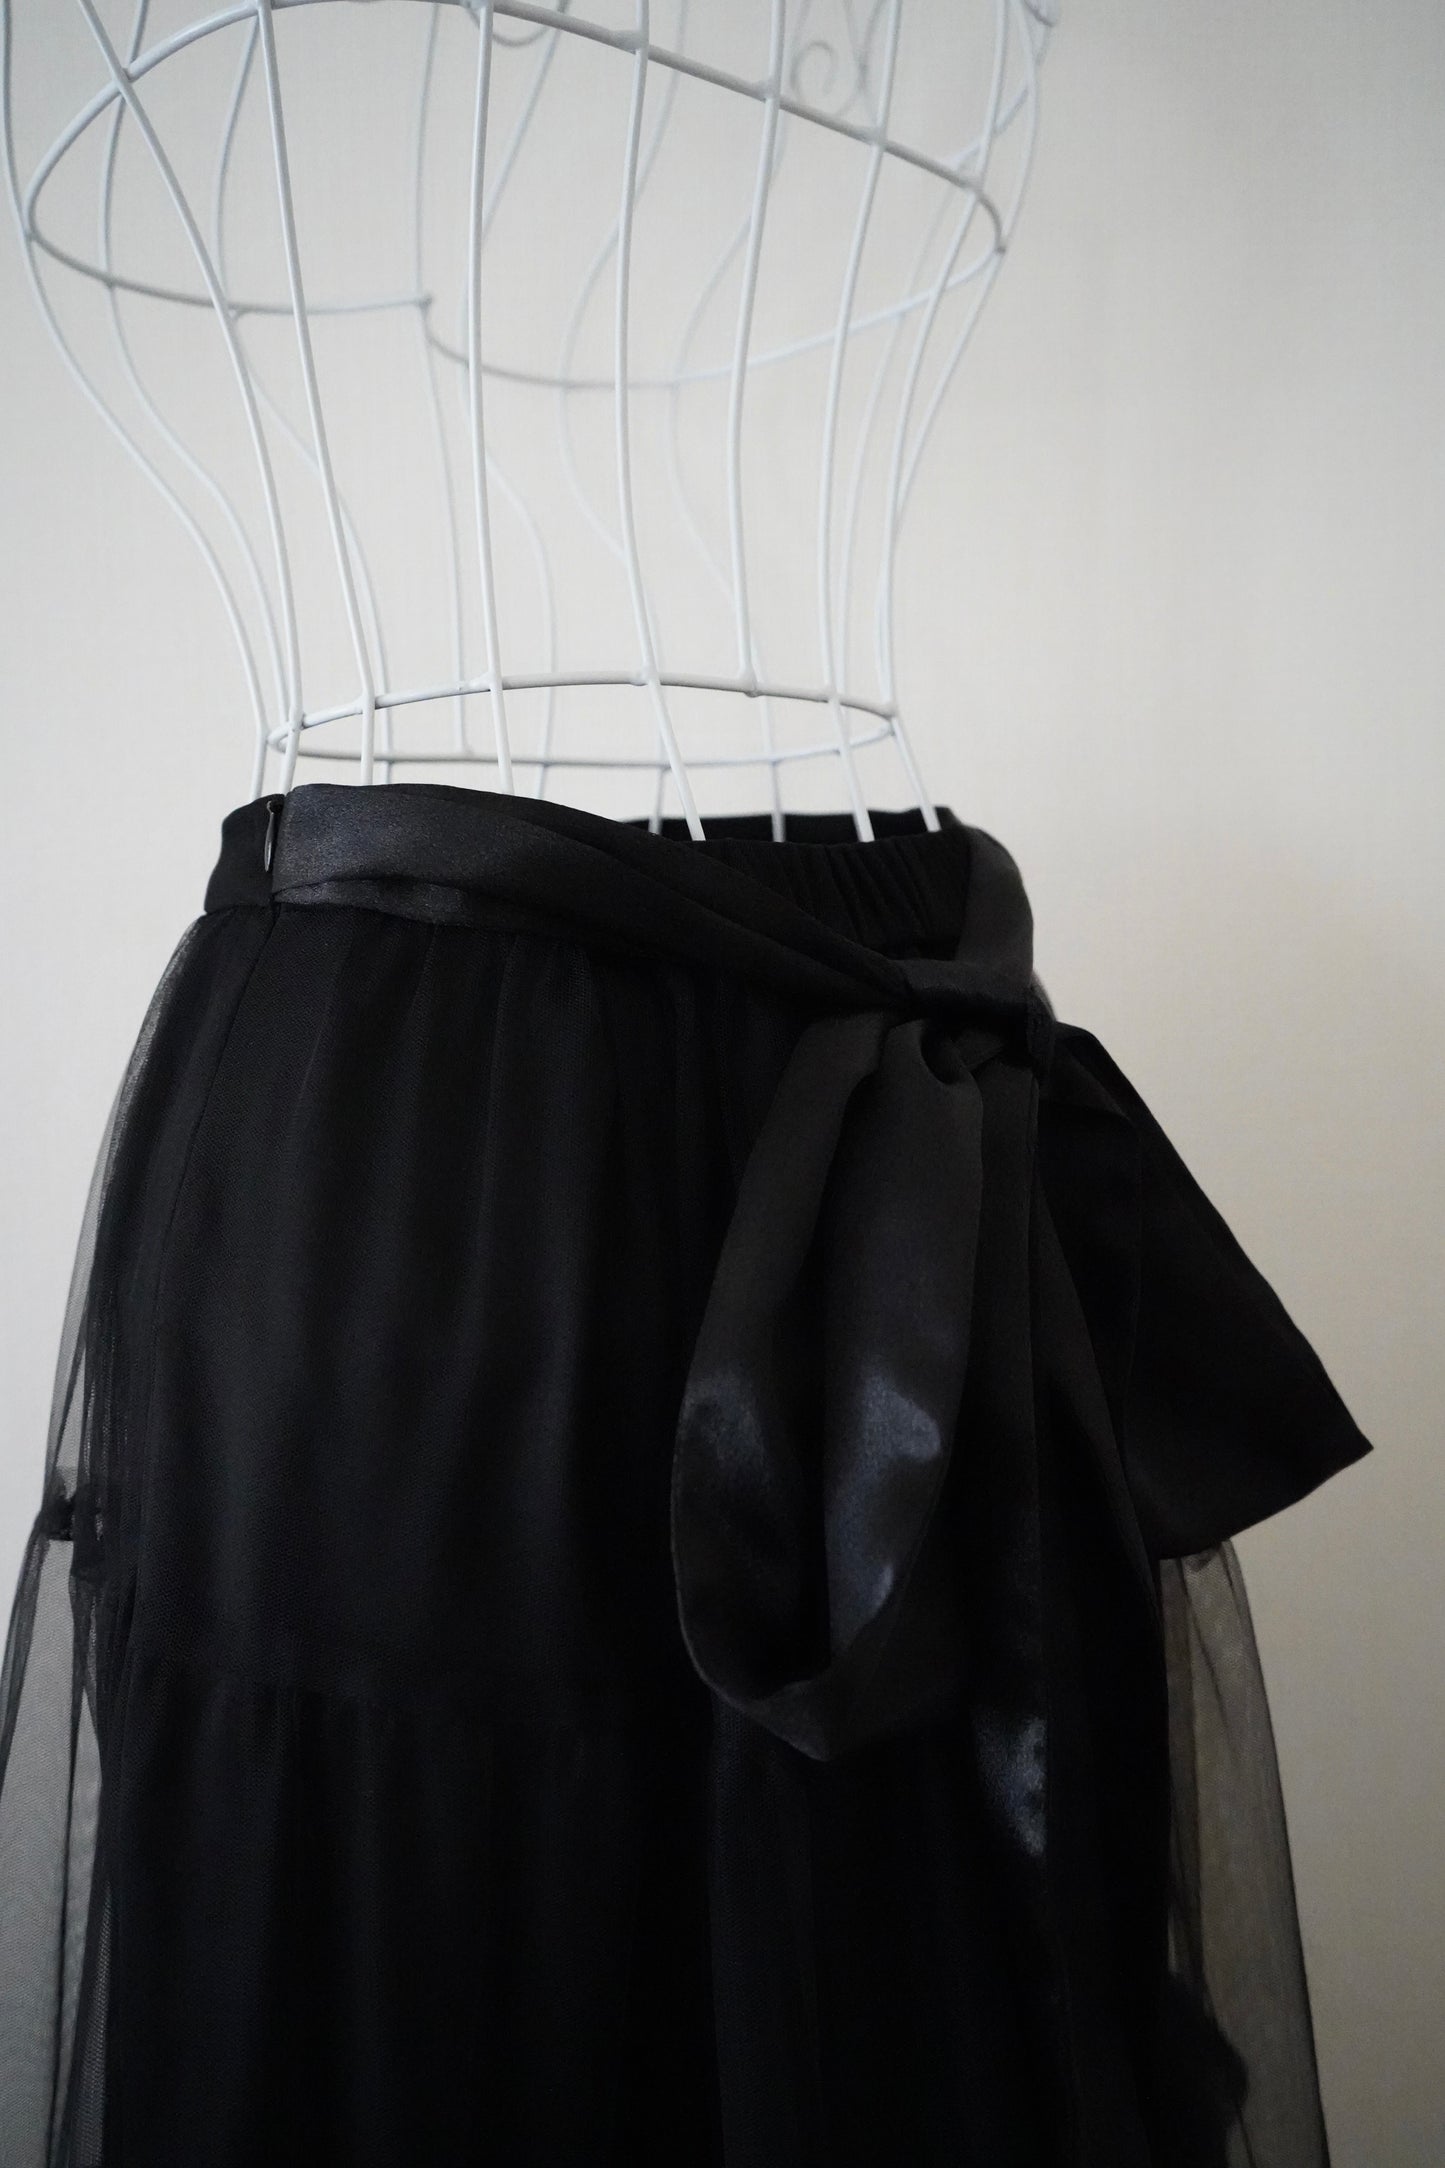 Black Swan Long Tulle Skirt